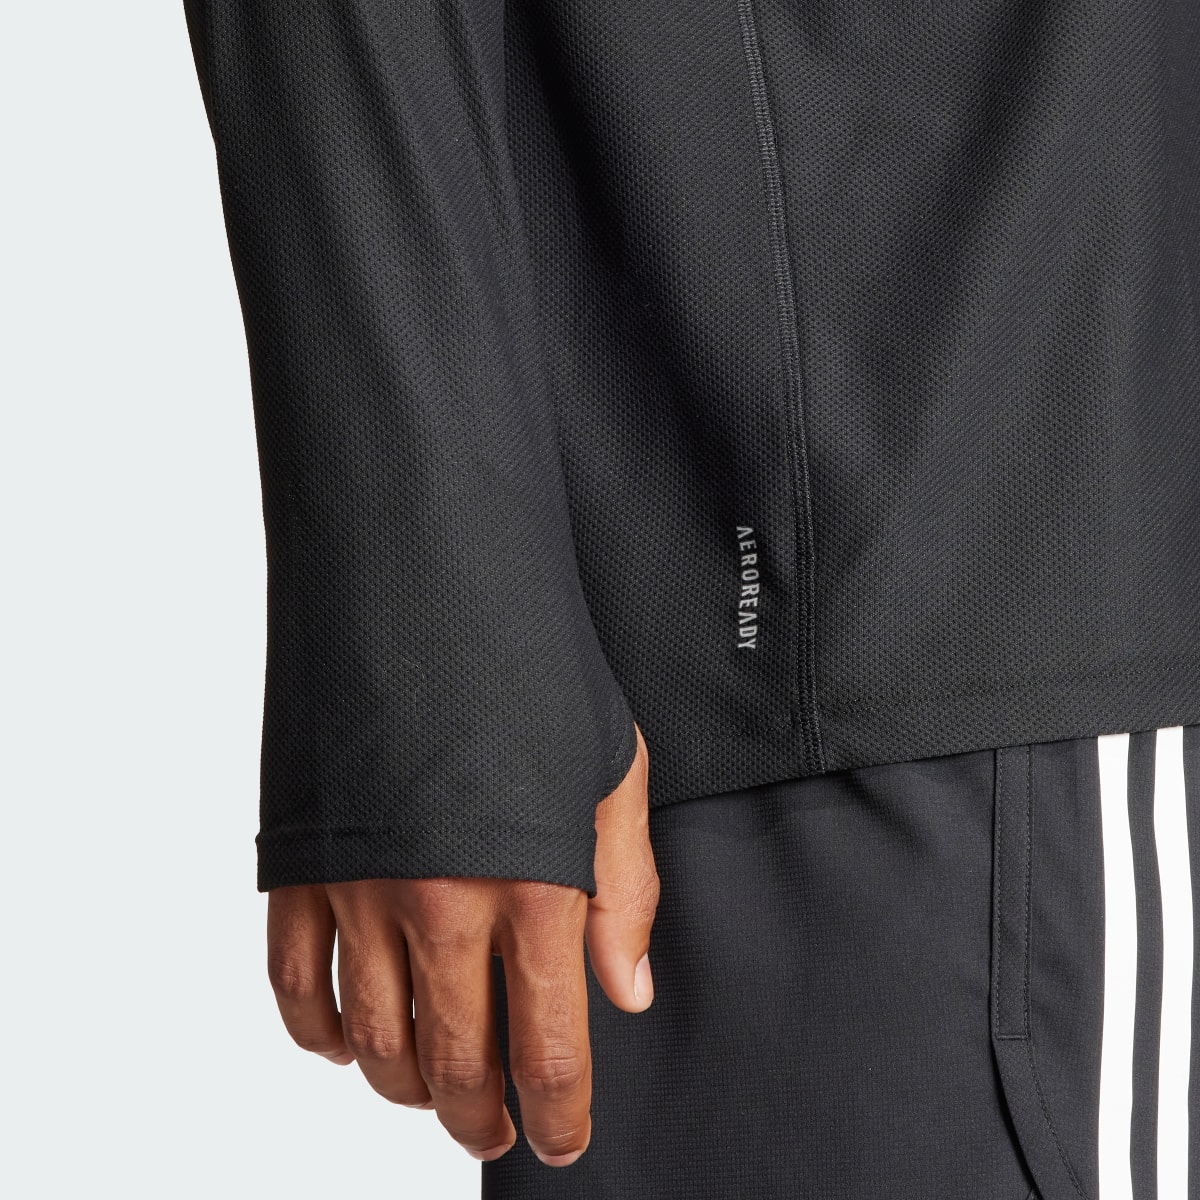 Adidas Own The Run Long Sleeve Long-Sleeve Top. 7